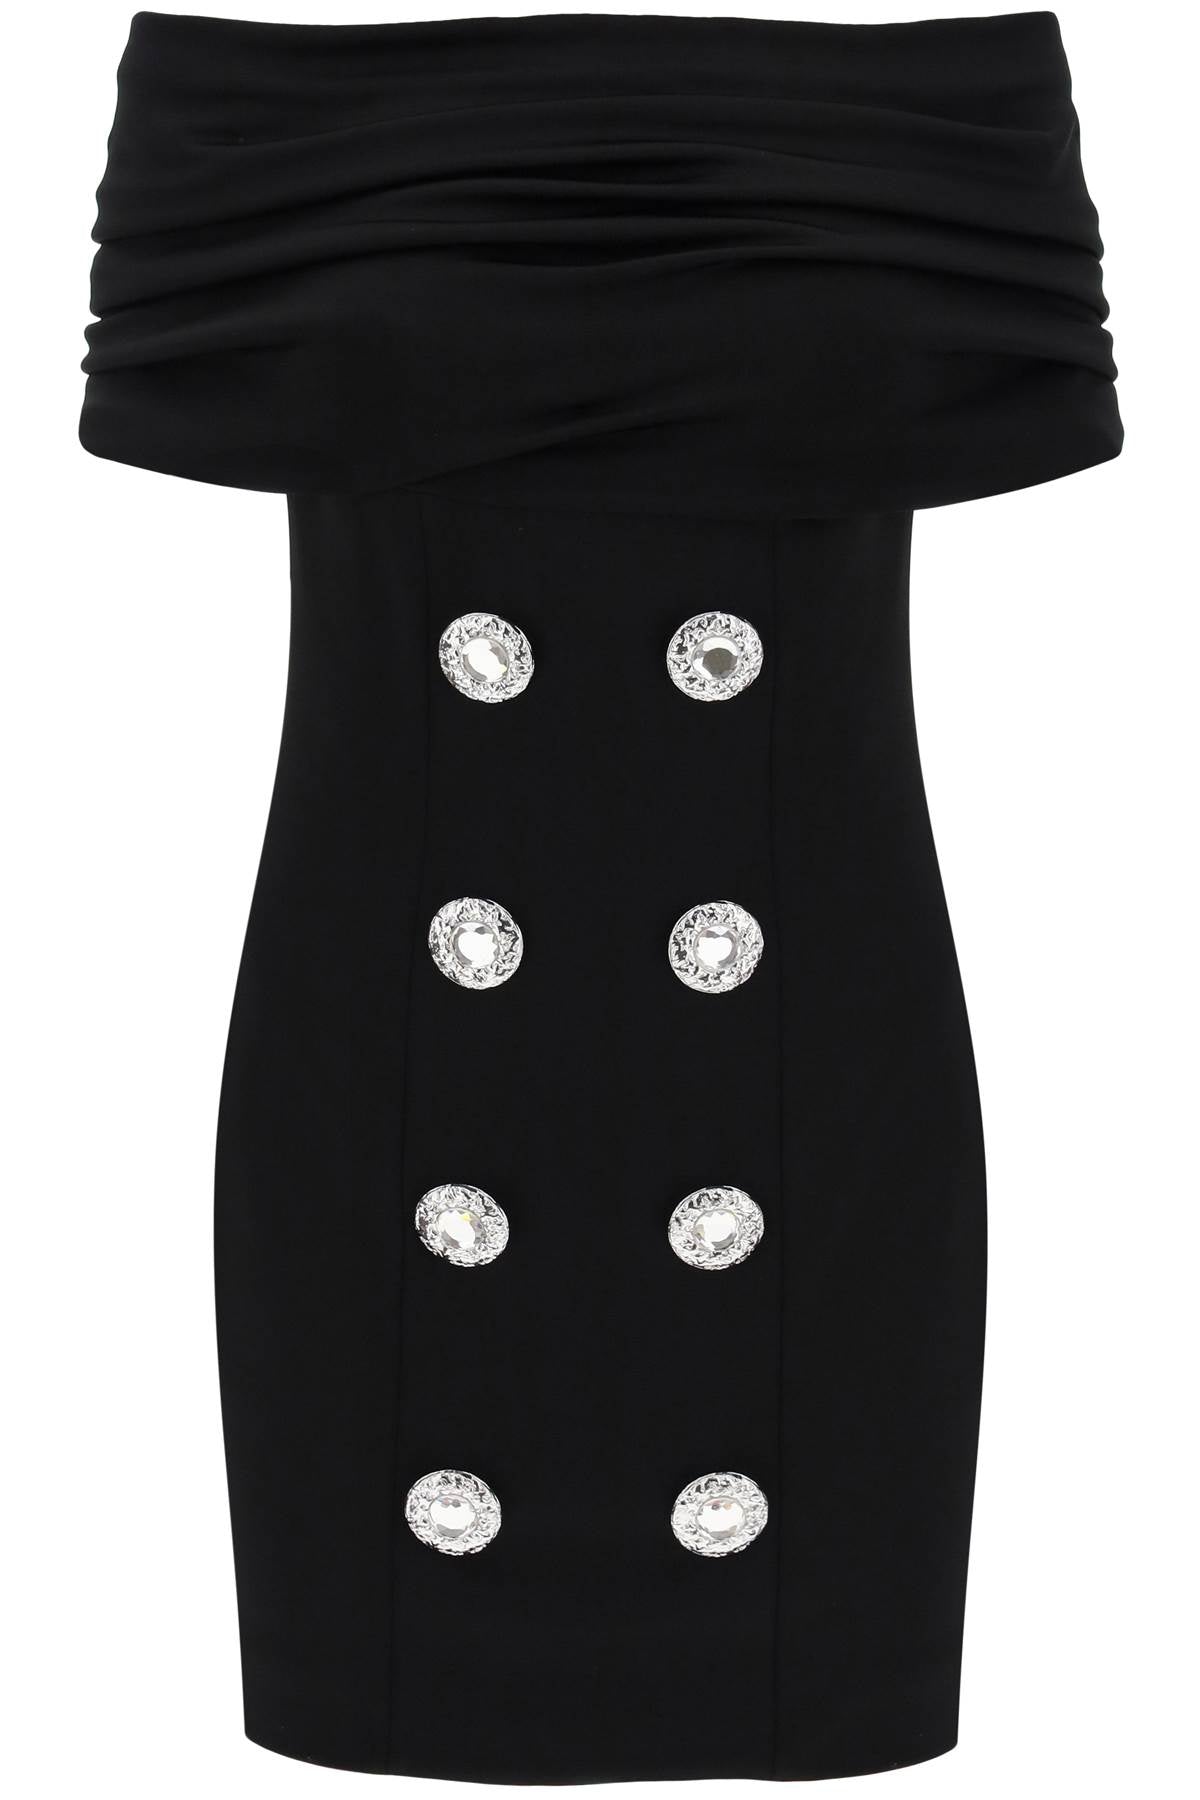 Shop Balmain Elegant Mini Dress With Boat Neckline In Black